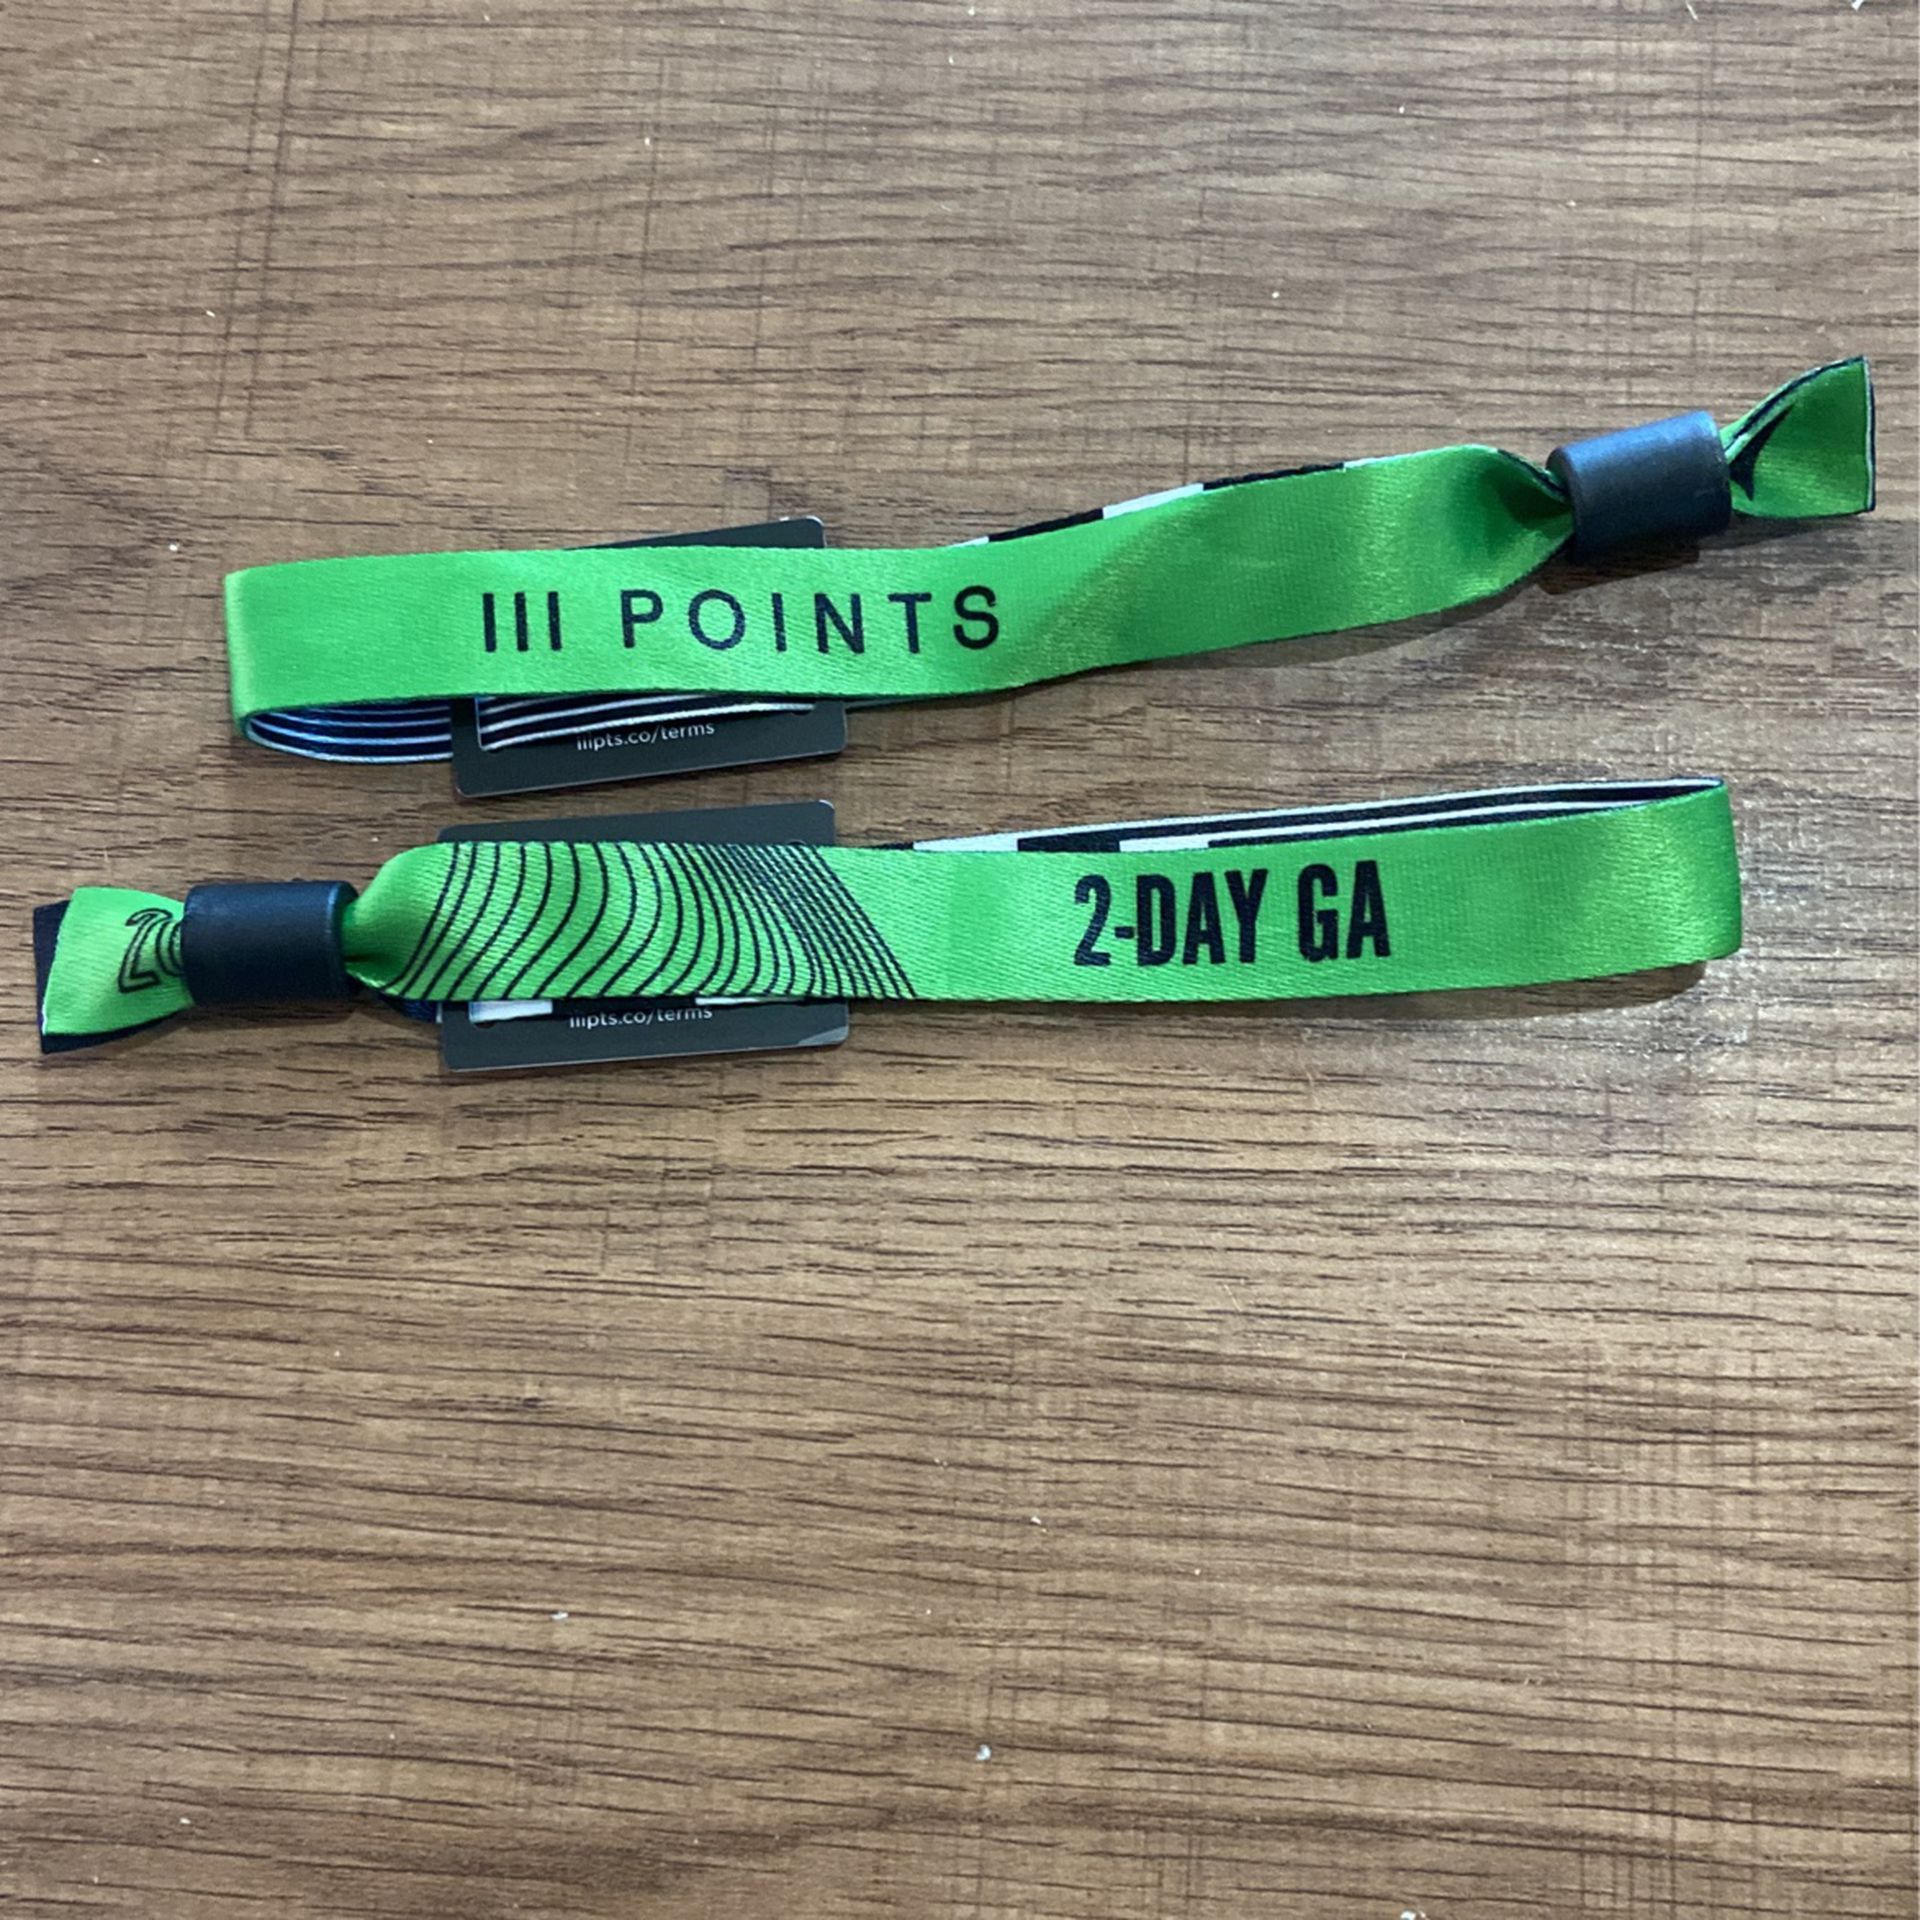 iiipoints 2-Day GA Tickets (2x)